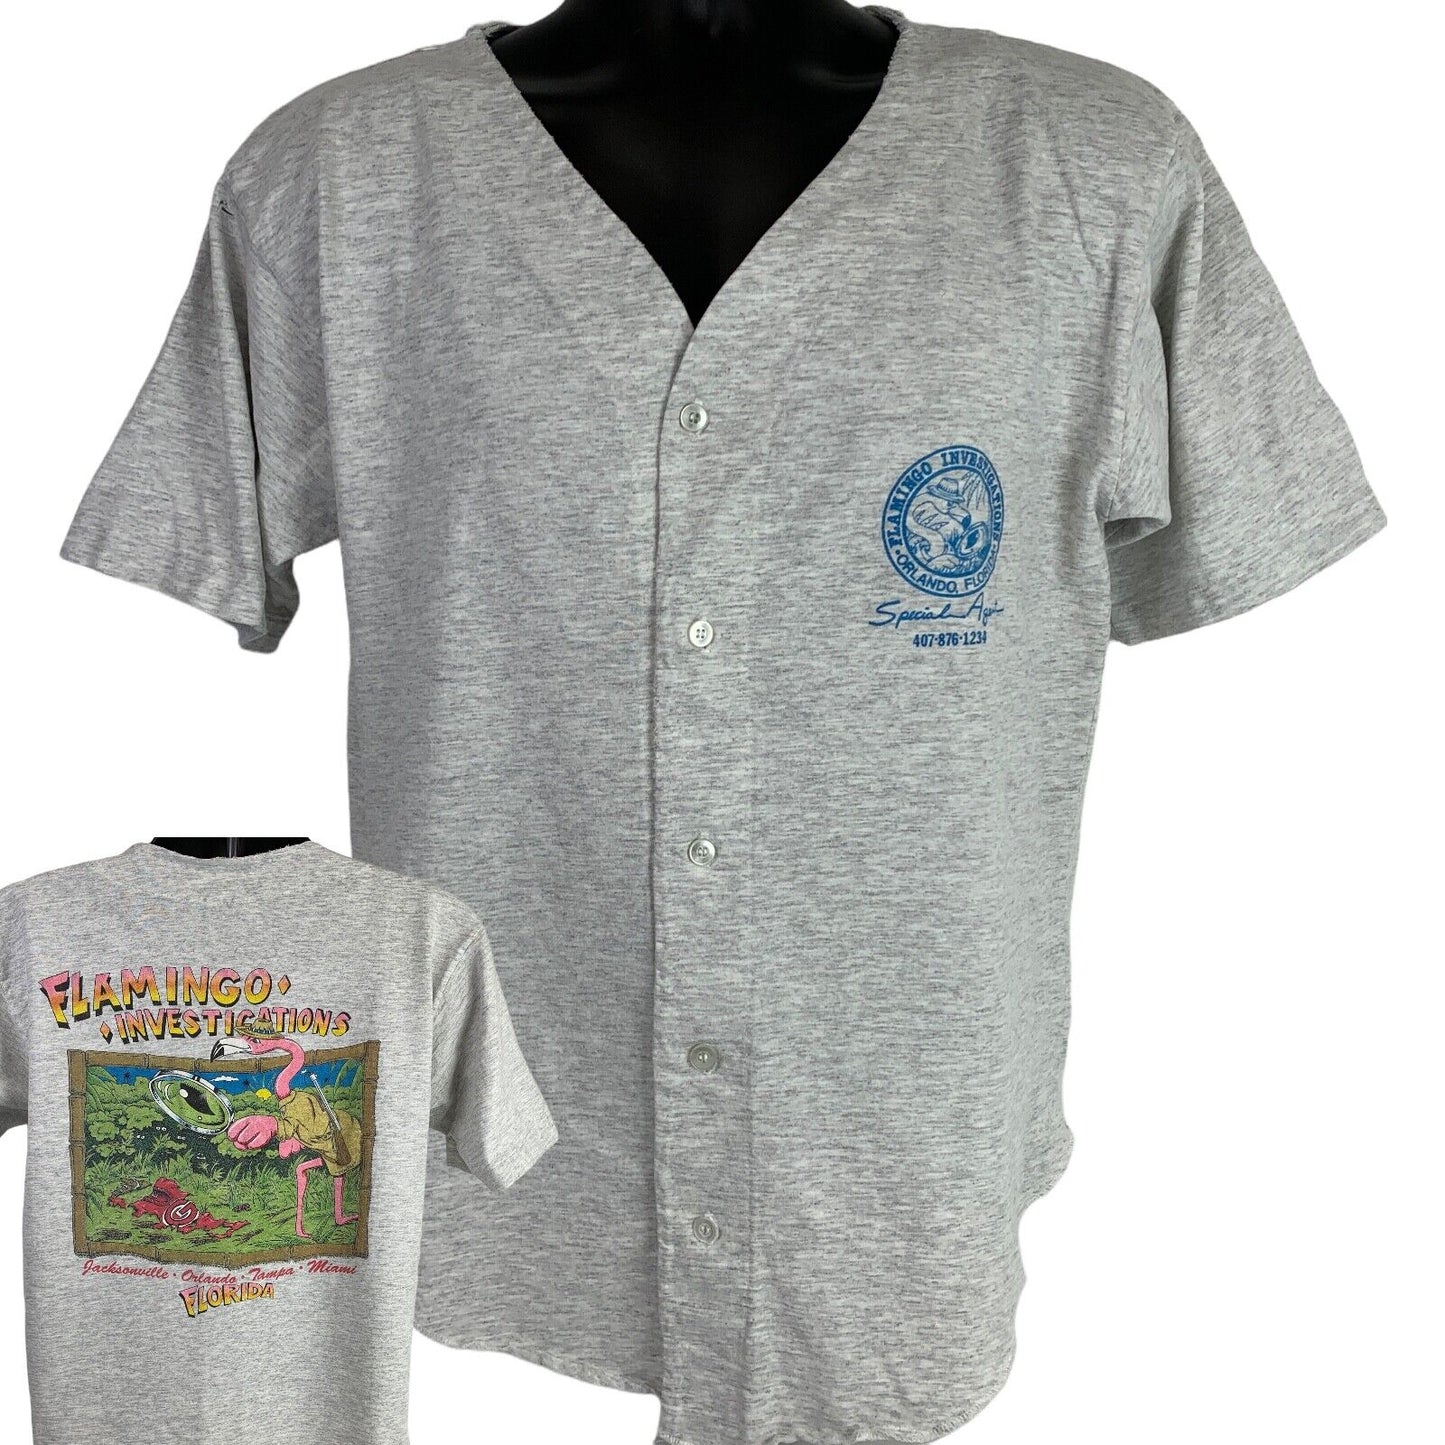 Florida Flamingo Investigations Vintage 90s T Shirt Private Investigator Medium